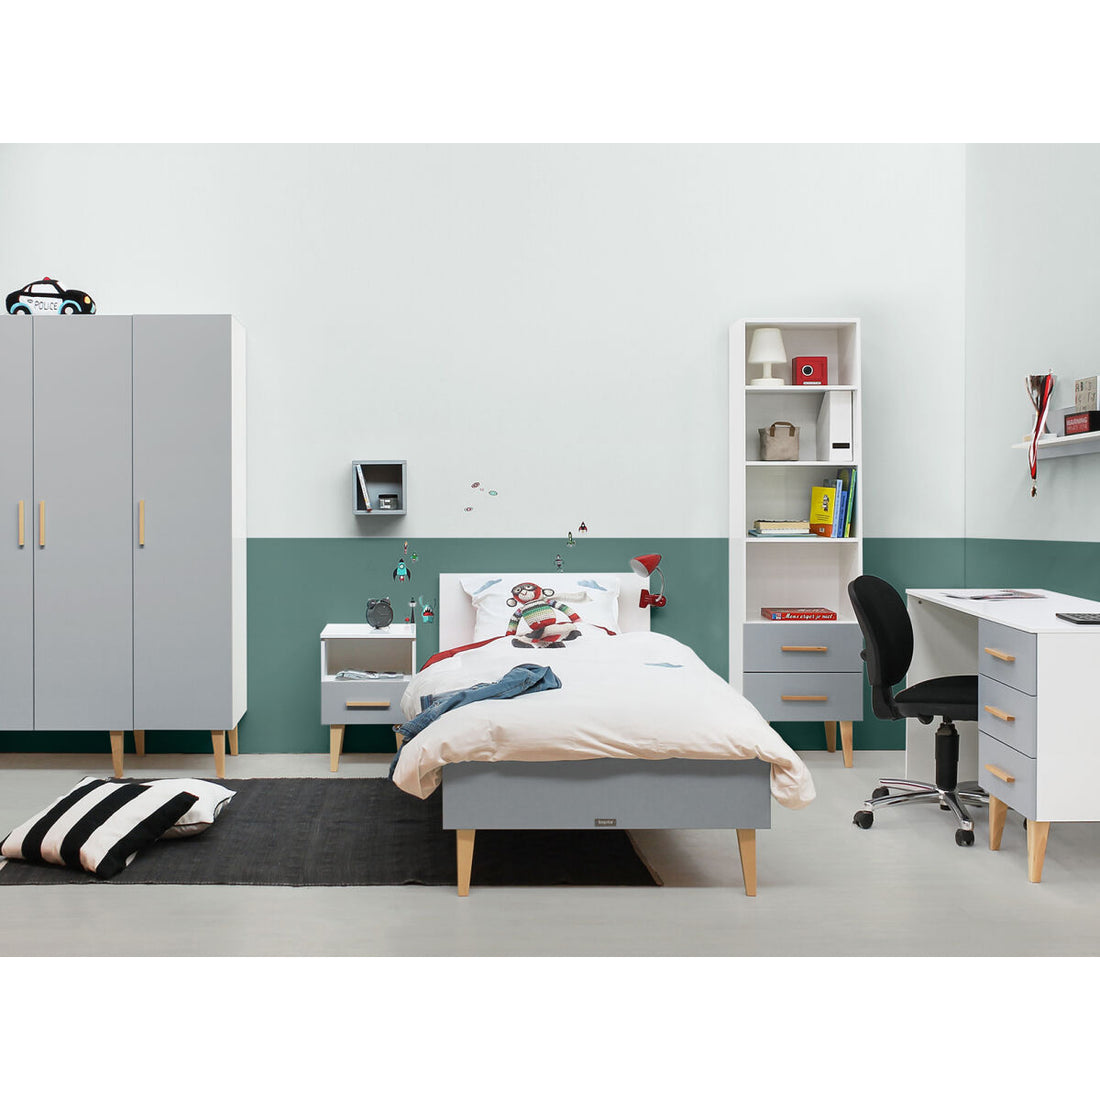 bopita-bed-90x200-emma-white-grey-with-bed-base-bopt-1709020-bopt-15420961-set- (8)